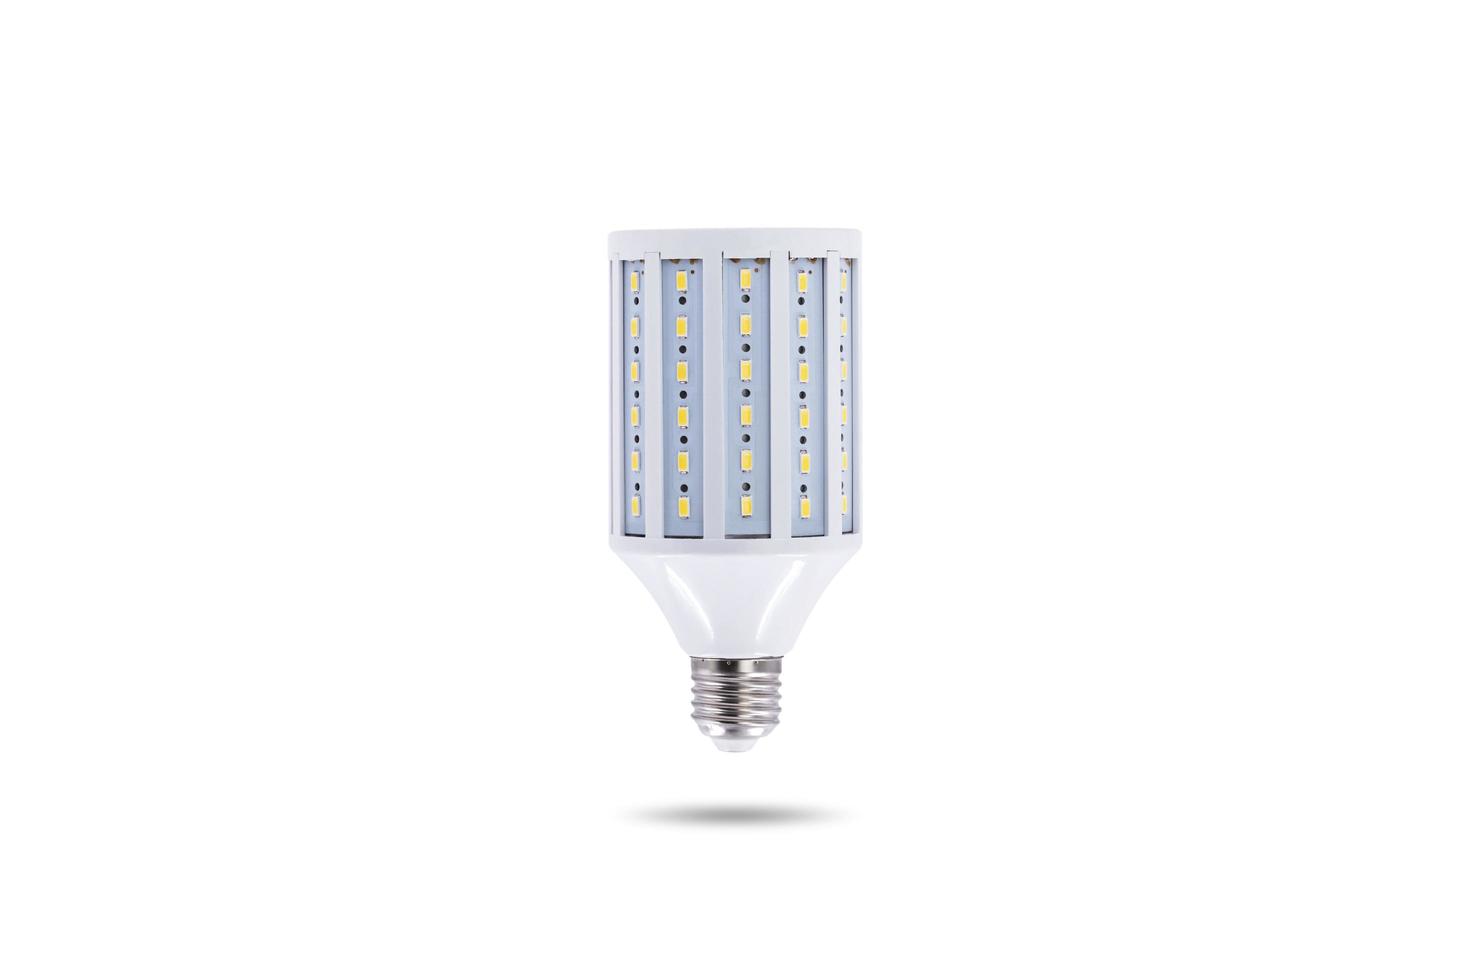 LED energy saving lamp screw cap E27 230v on white background. photo